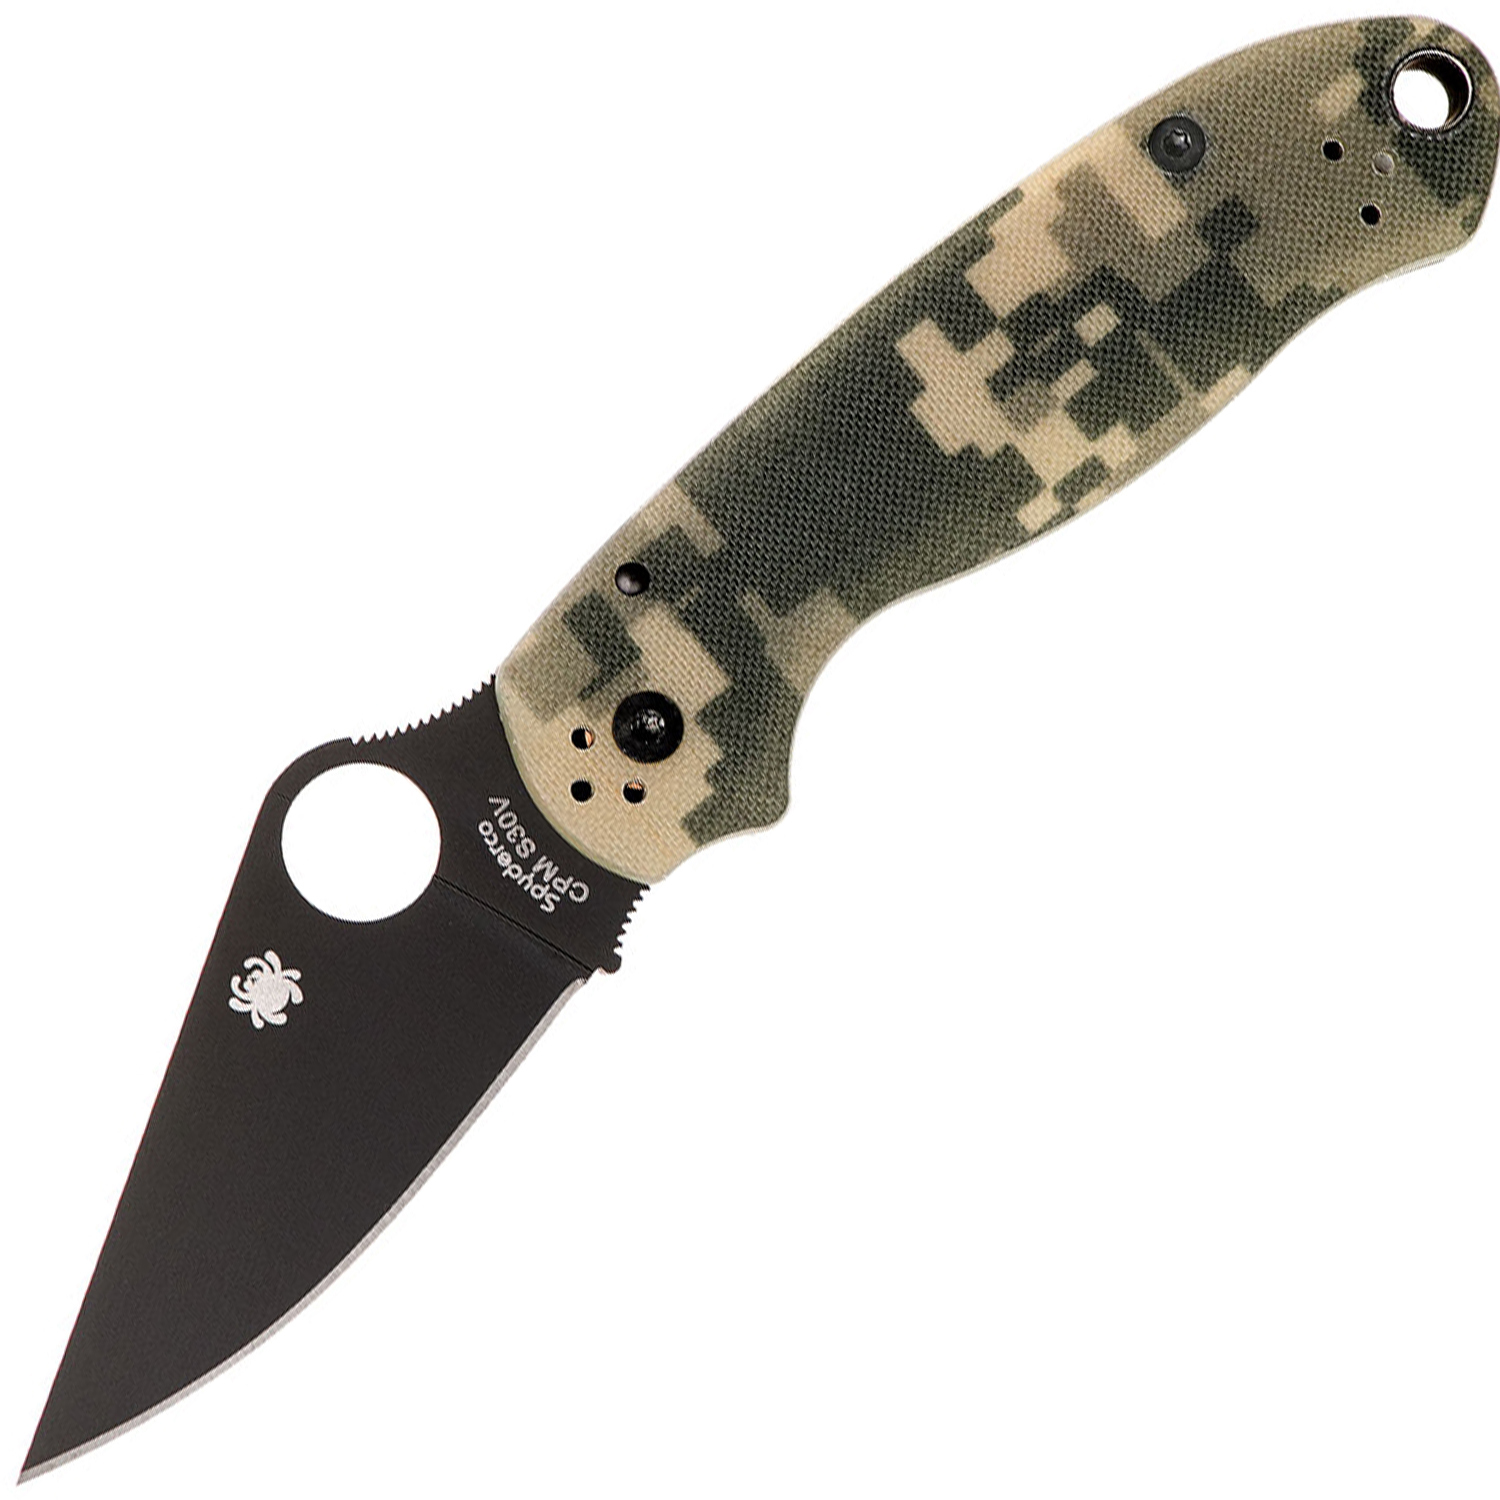 Нож складной Para 3 - Spyderco 223GPCMOBK, сталь Crucible CPM® S30V™ Black DLC Coated Plain, рукоять стеклотекстолит G10, цифровой камуфляж (Digi Camo) - фото 1